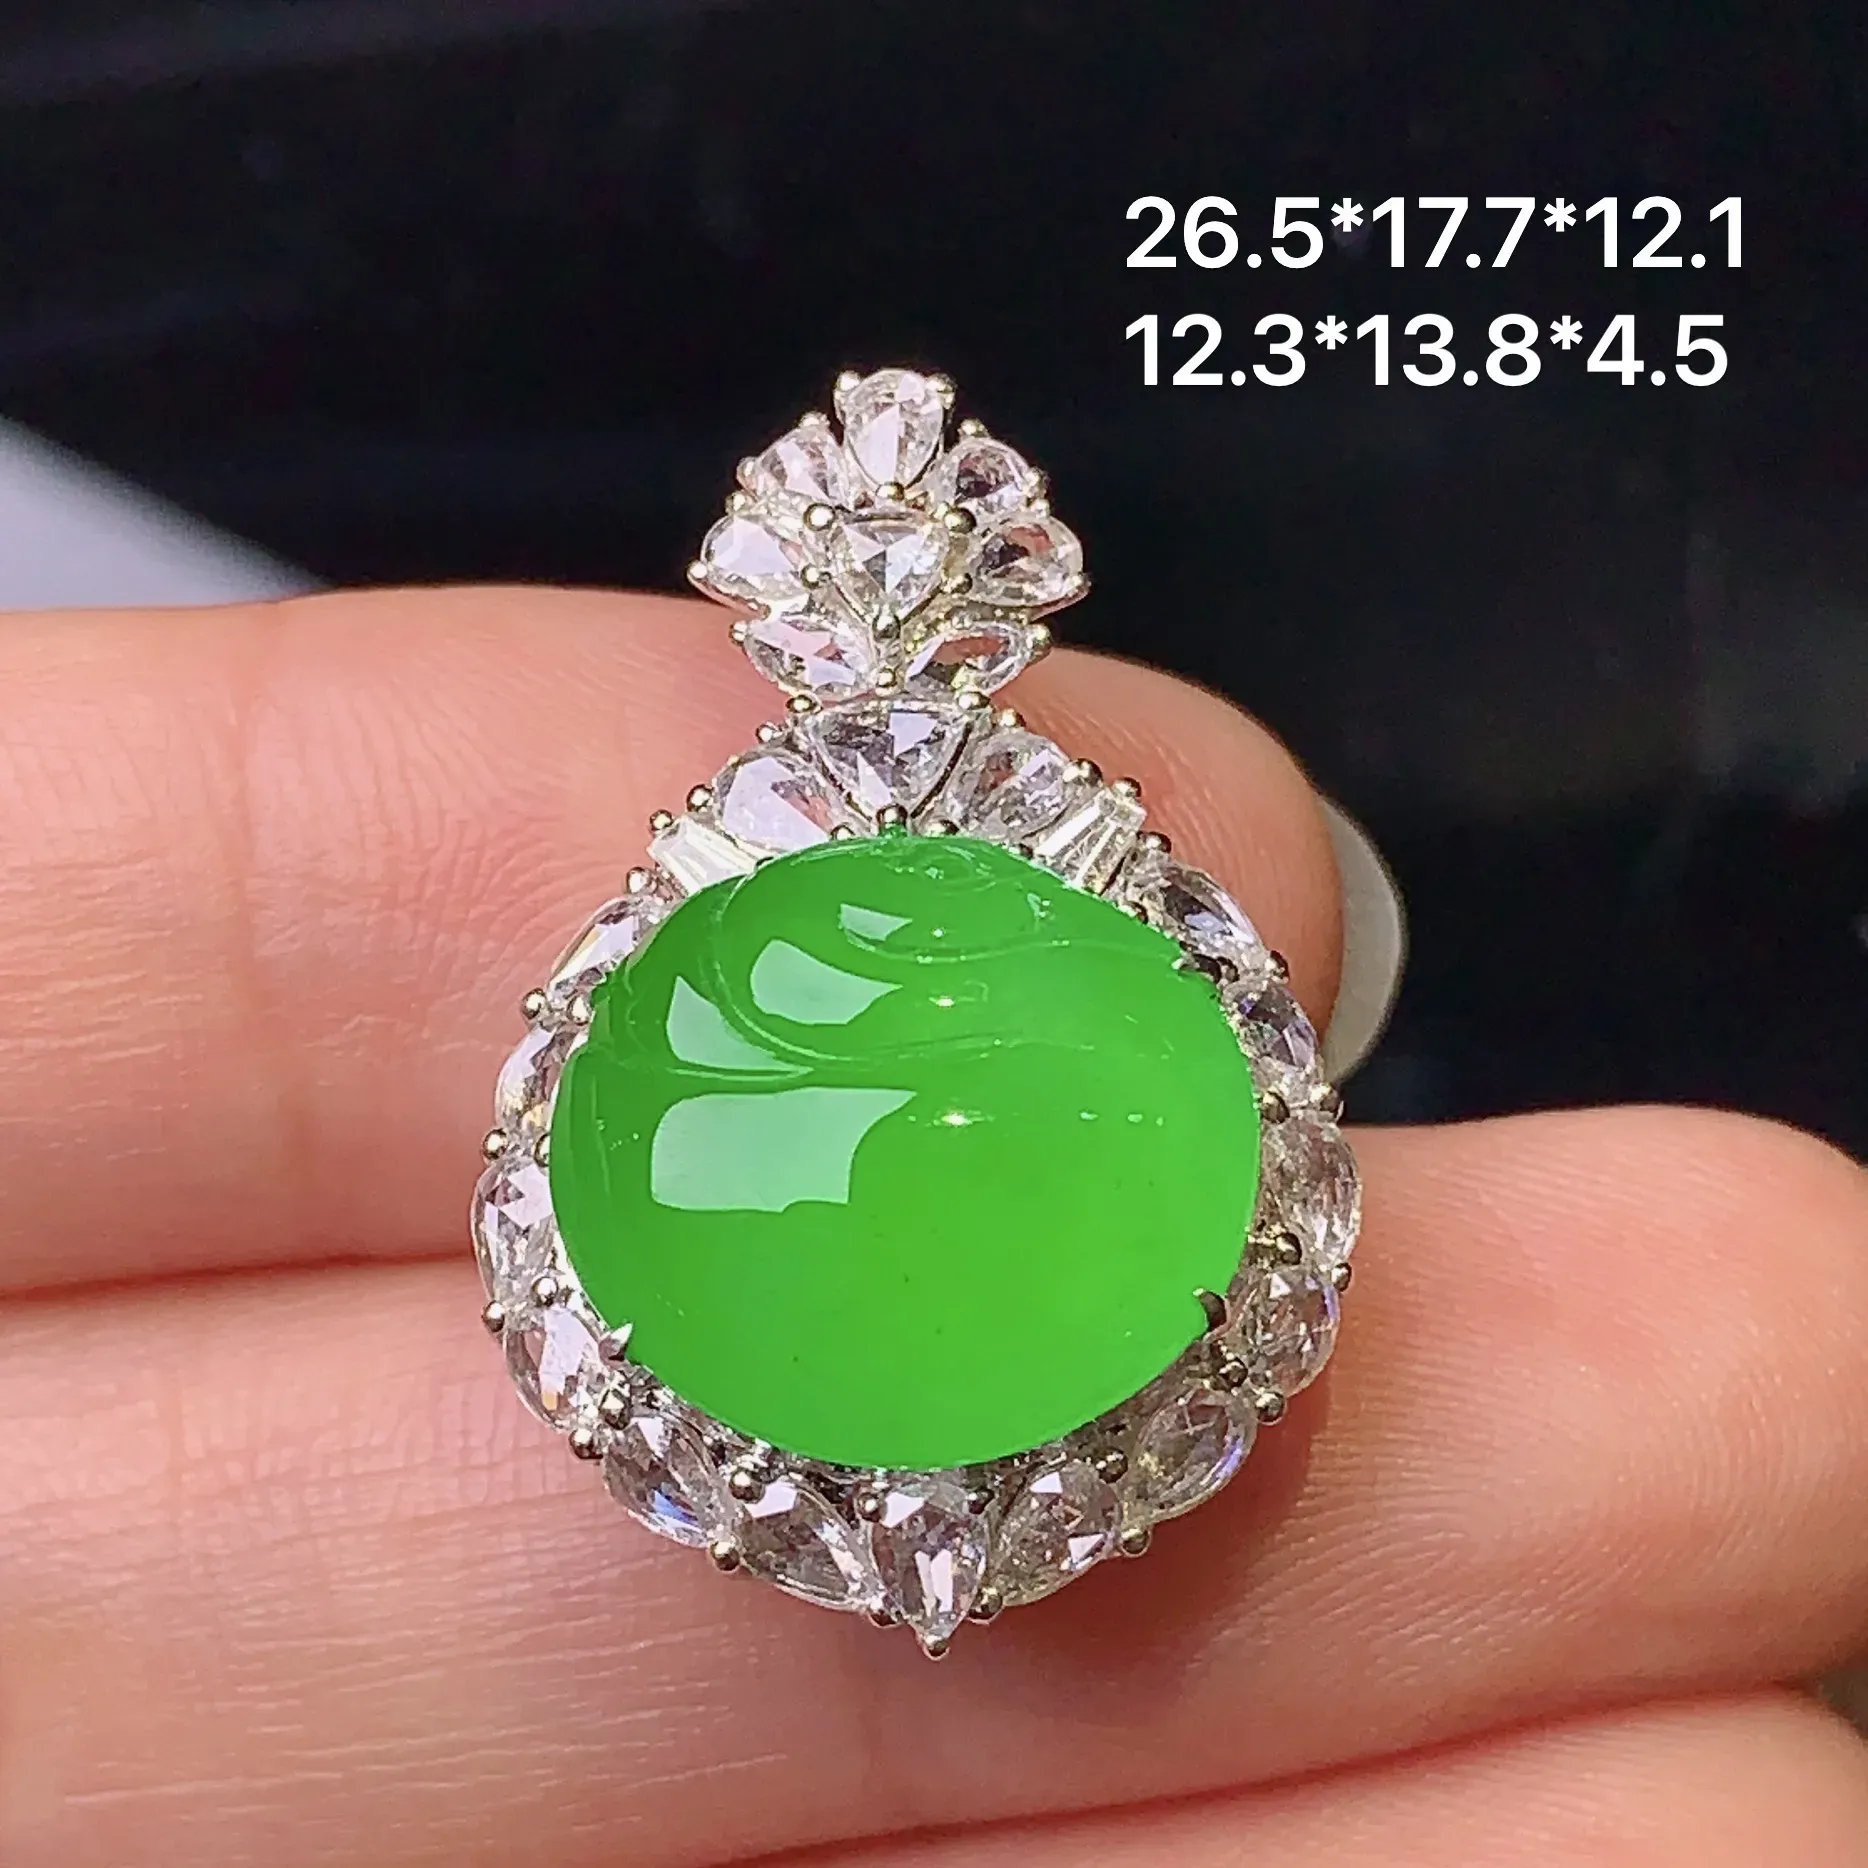 18k金钻镶嵌满绿天鹅吊坠 玉质细腻 色泽清新艳丽 整体尺寸26.5*17.7*12.1